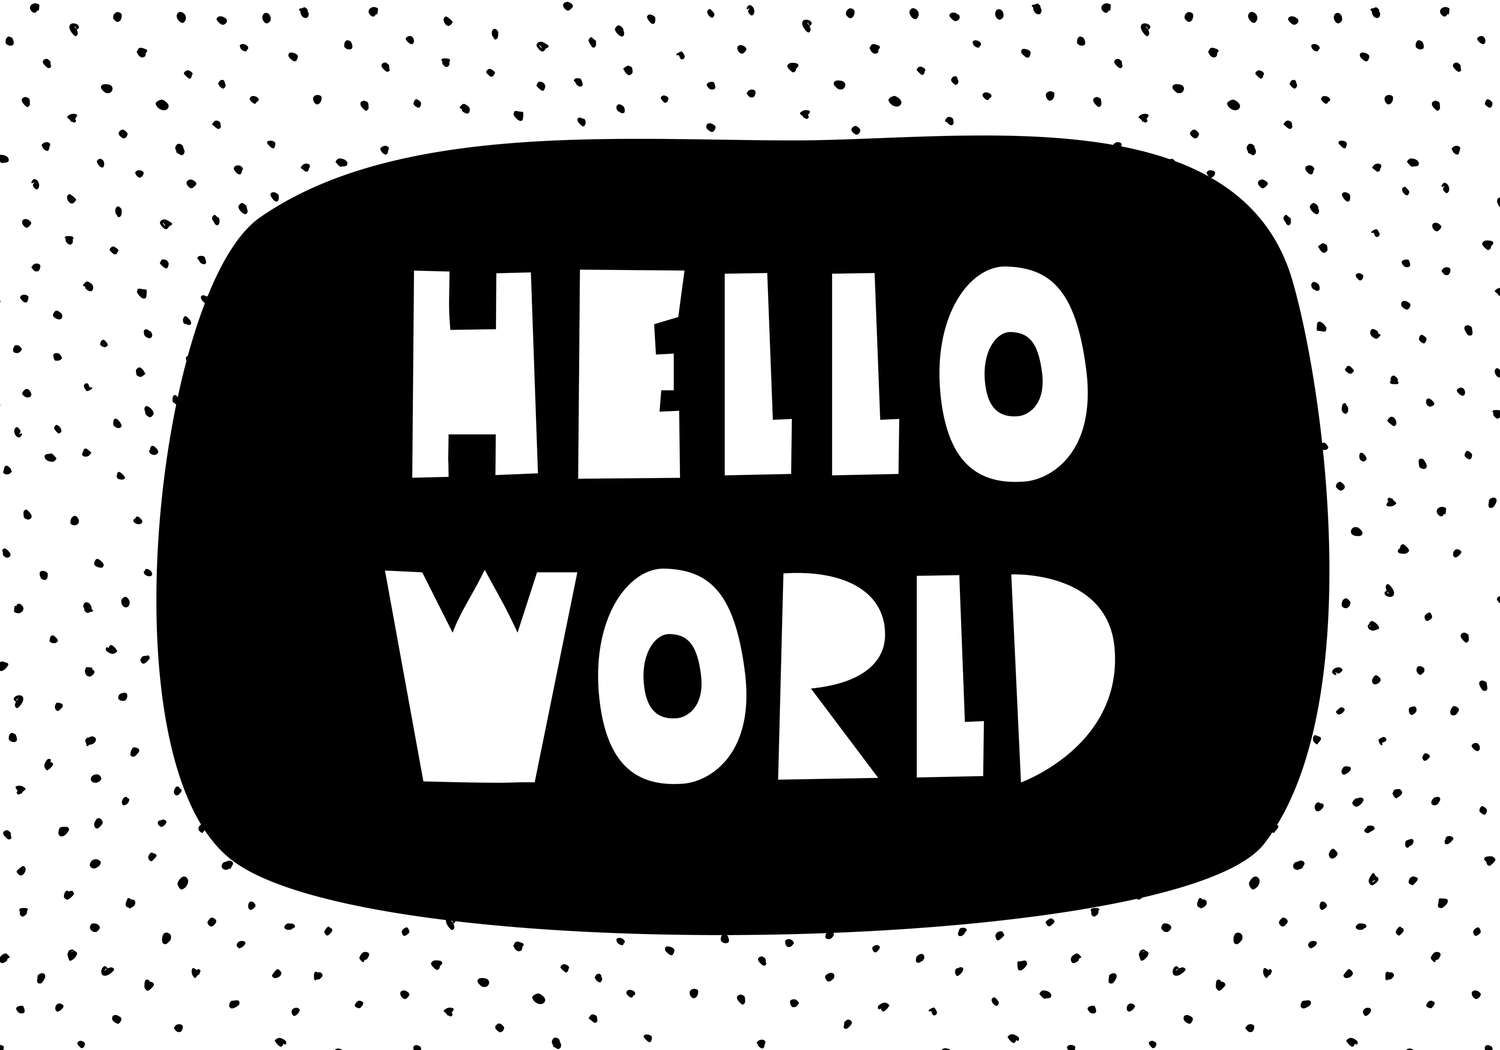             Fotomural para habitación infantil con letras "Hello World" - Material sin tejer liso y ligeramente brillante
        